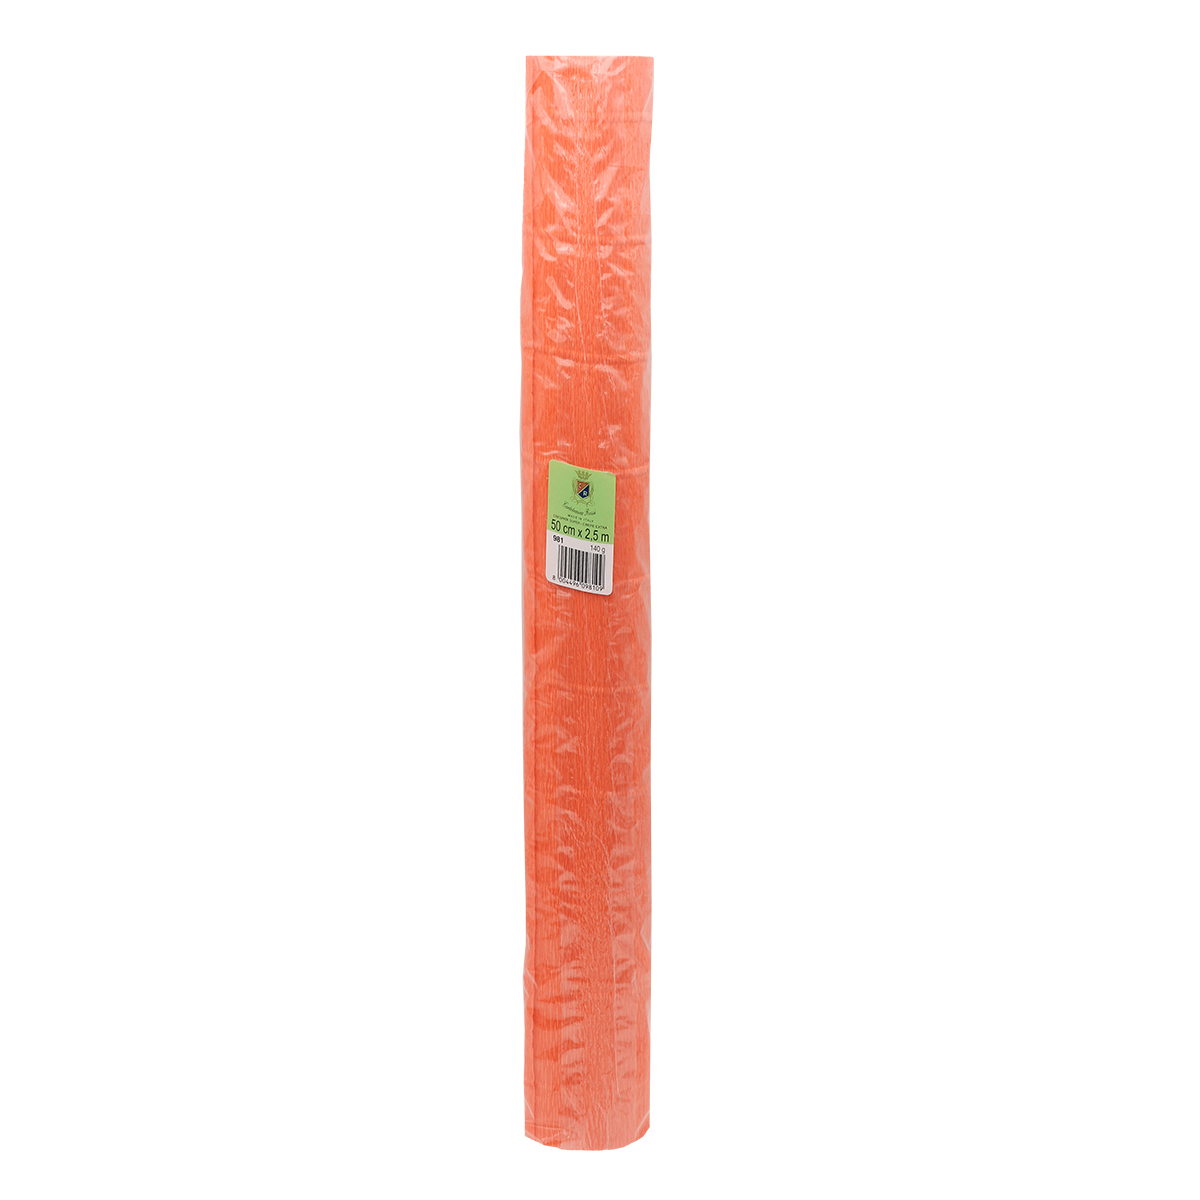 Бумага Айрис гофрированная креповая для творчества 50 см х 2.5 м 140 гр оранжевая - фото 4